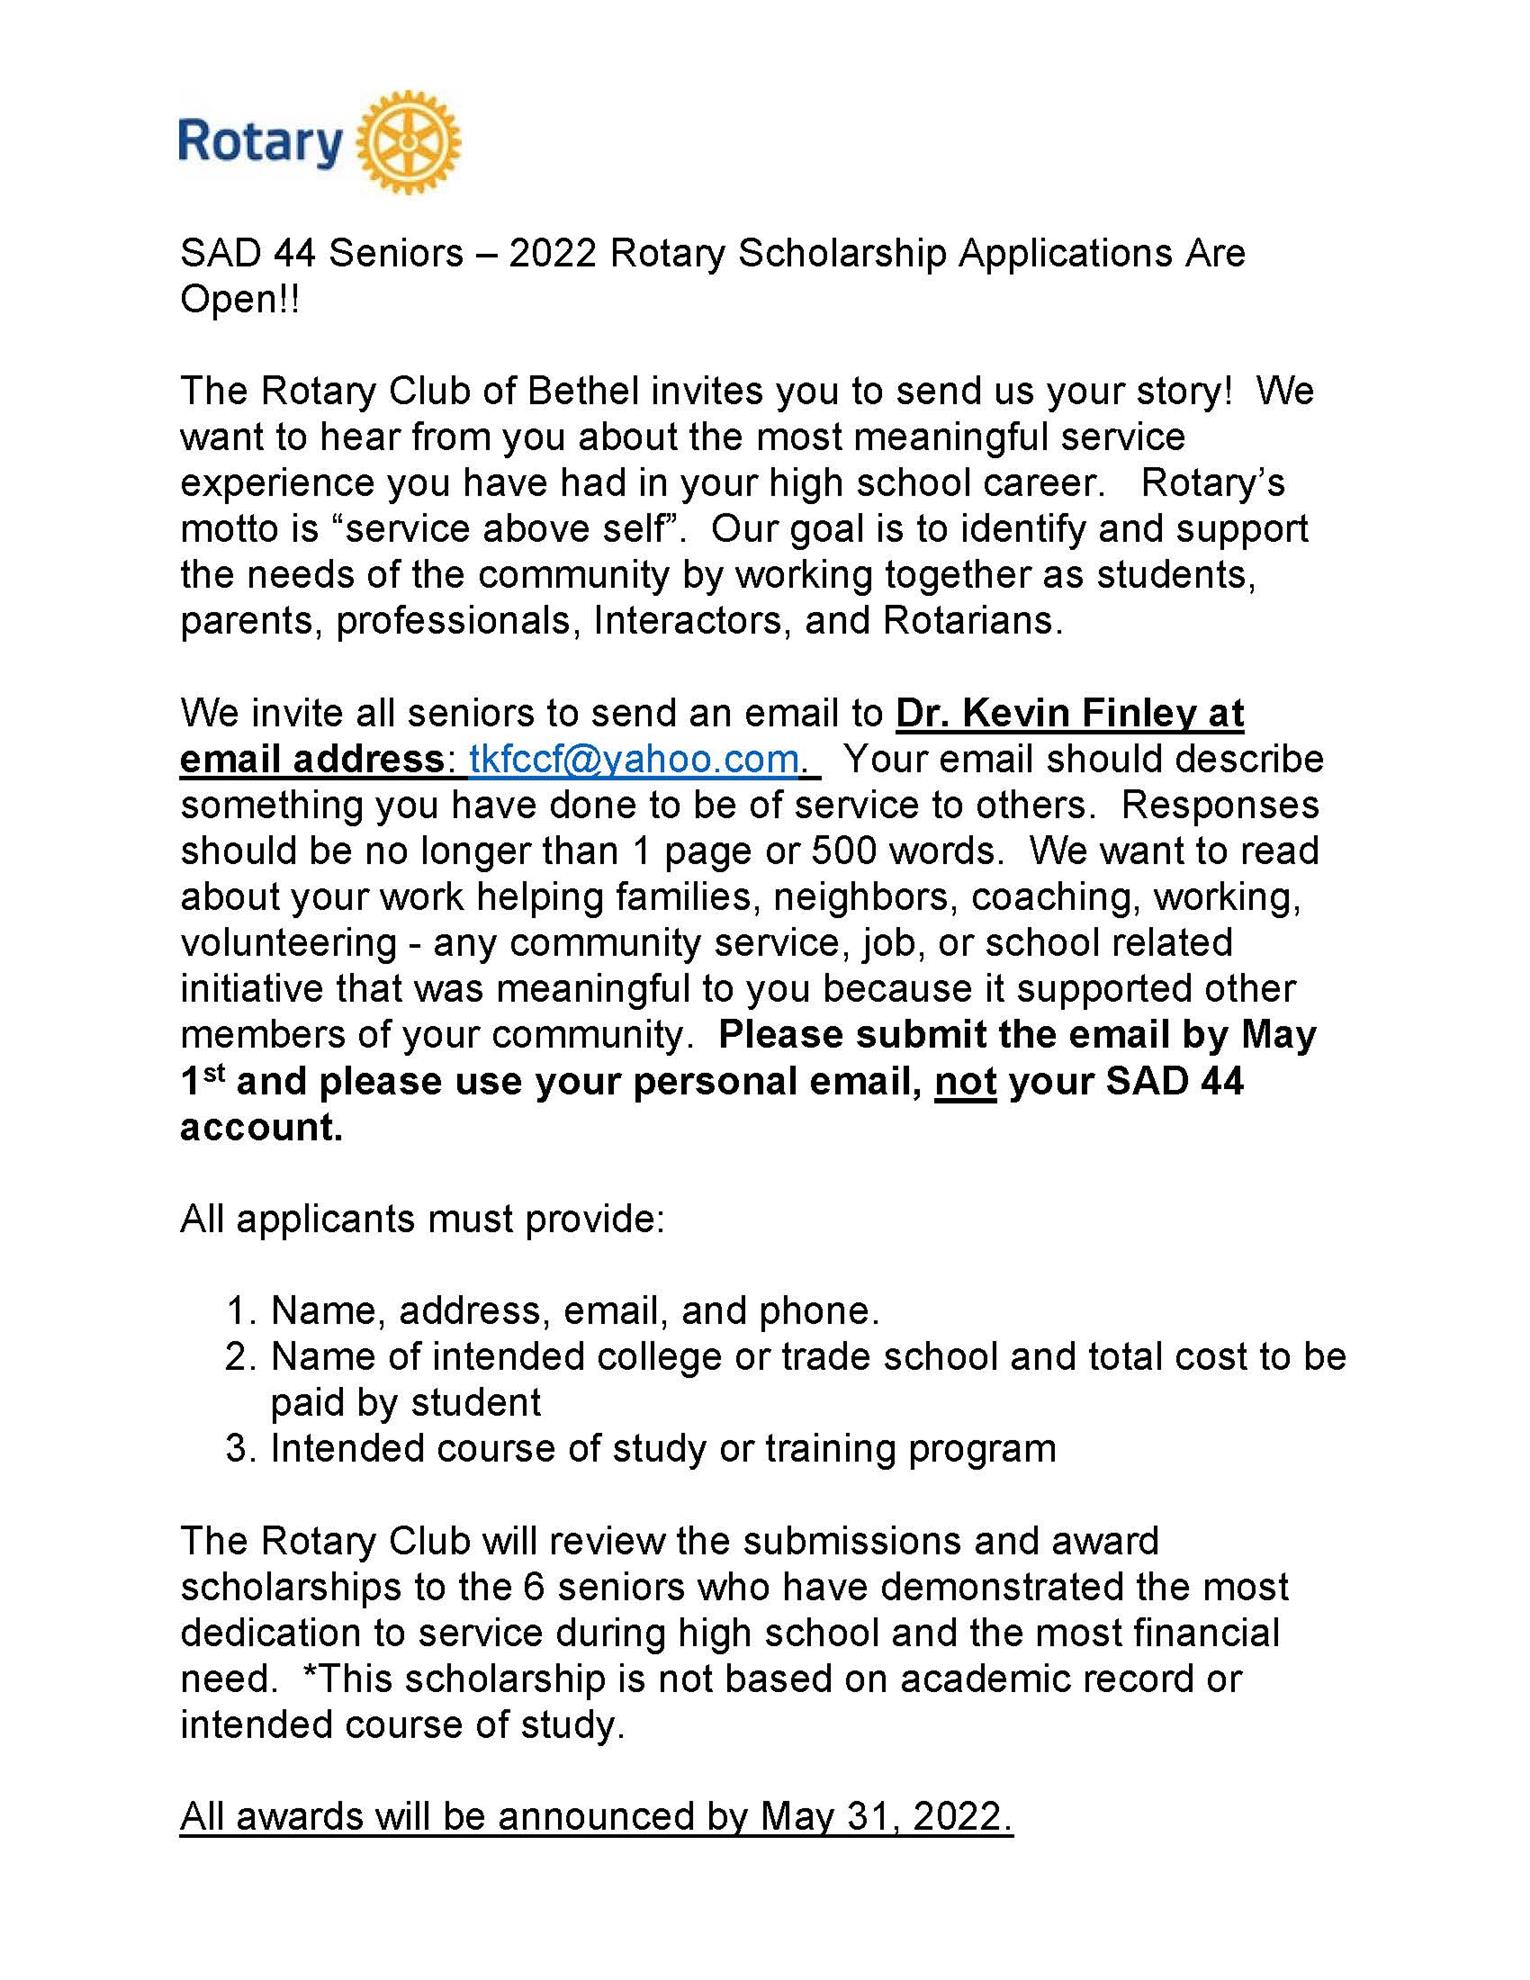 2022 Rotary Scholarship Application Rotary Club of Bethel